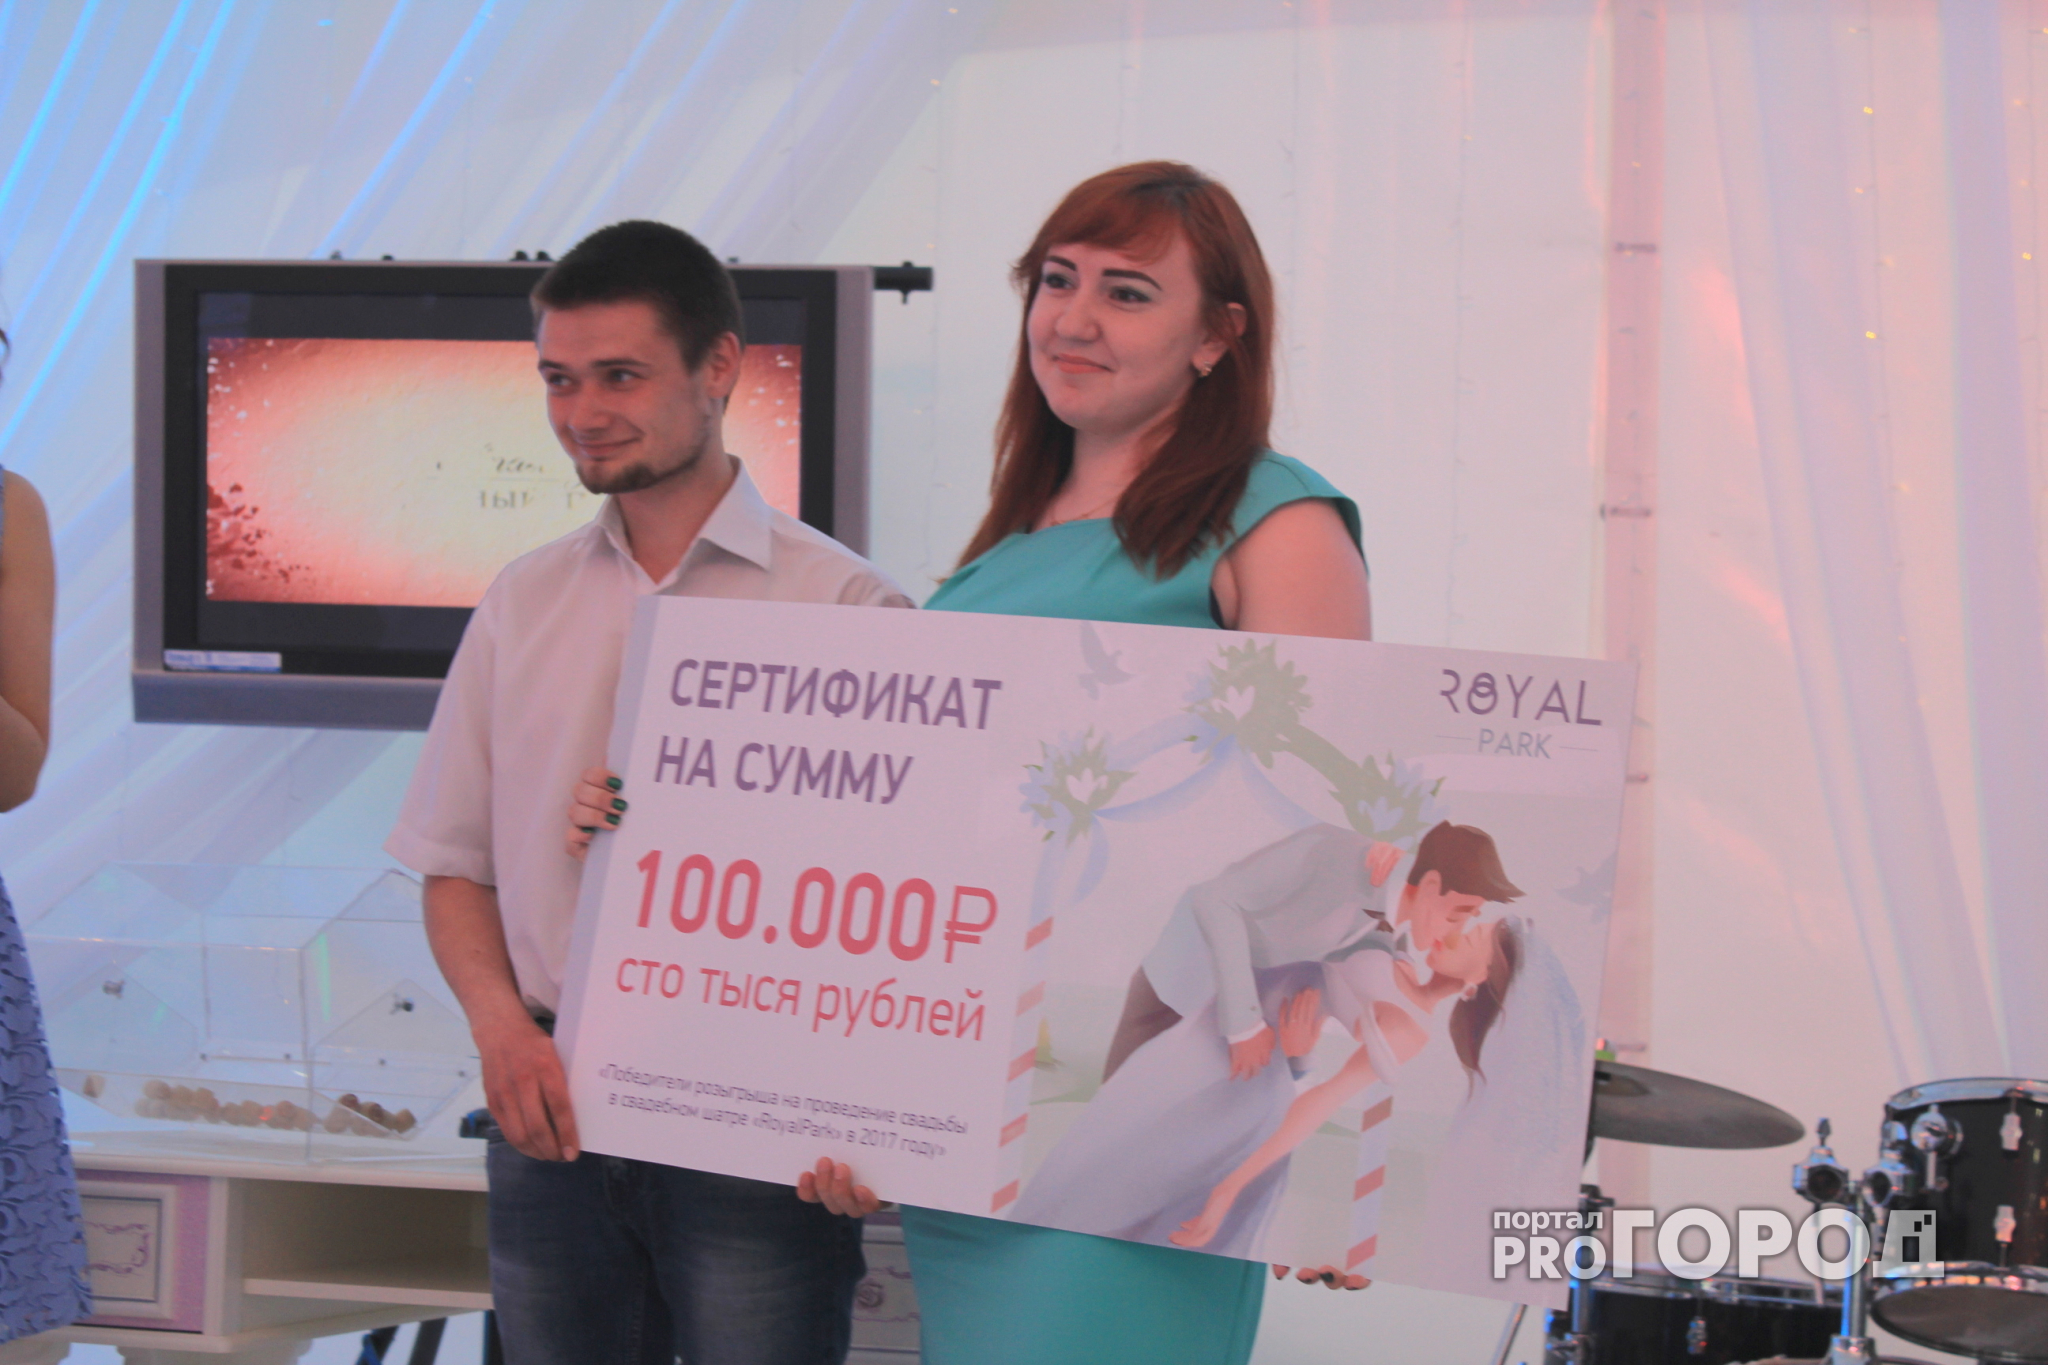 Сыктывкарская пара выиграла 100 000 рублей на чужой свадьбе